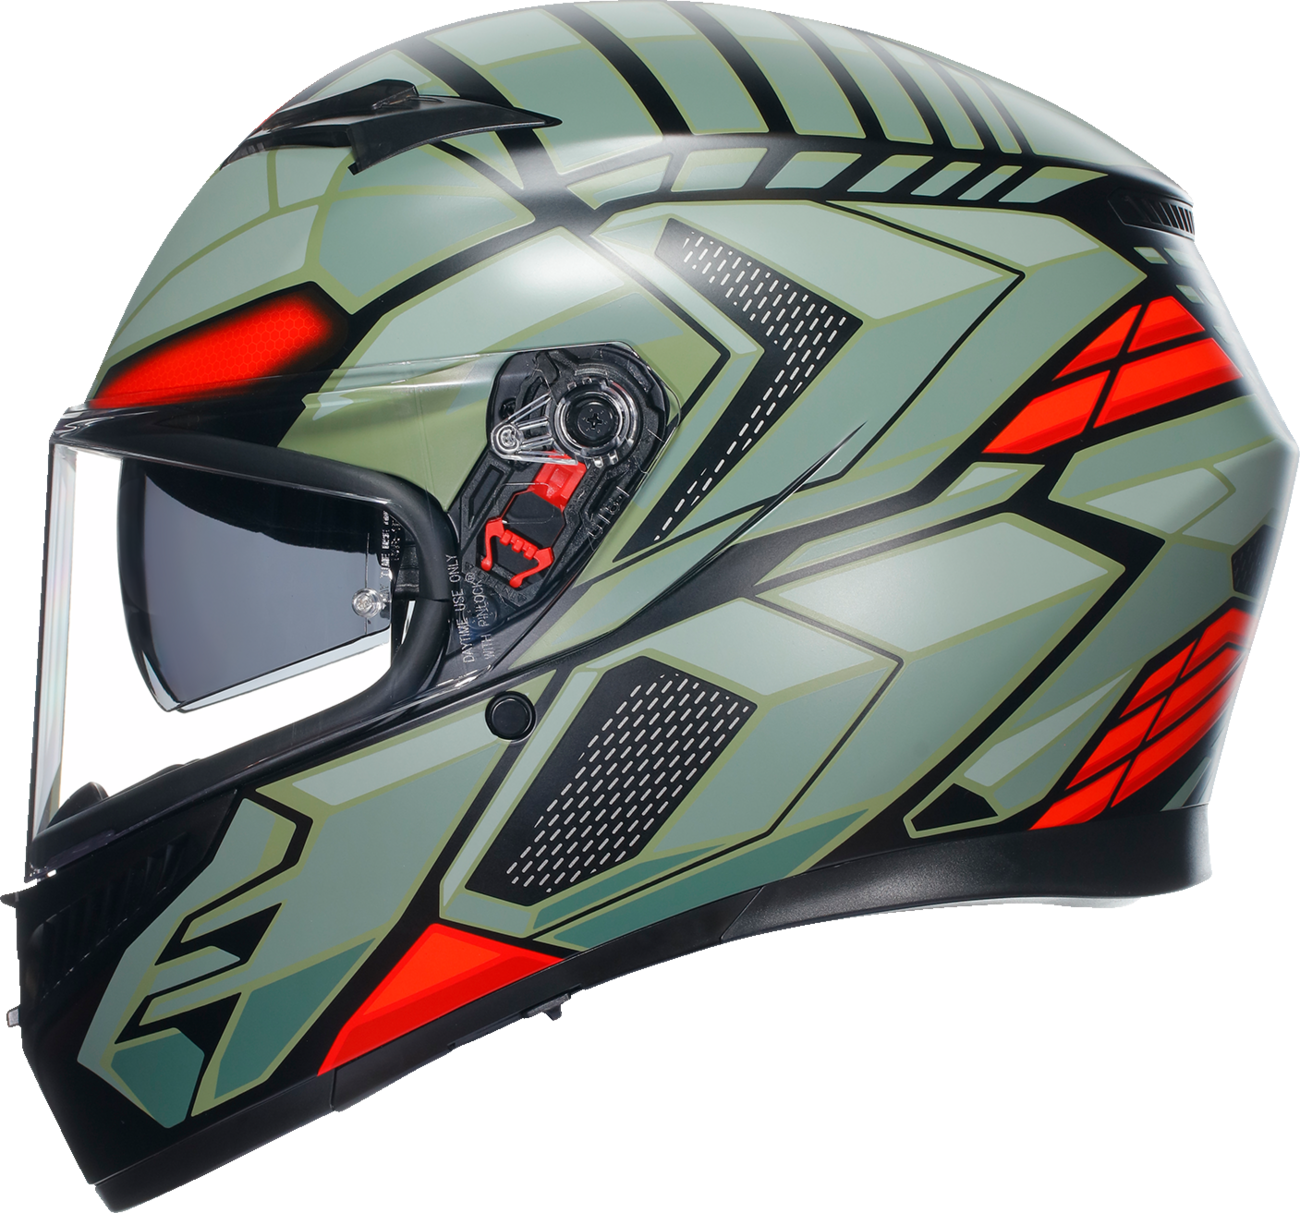 AGV K3 Helmet - Decept - Matte Black/Green/Red - Medium 2118381004010M